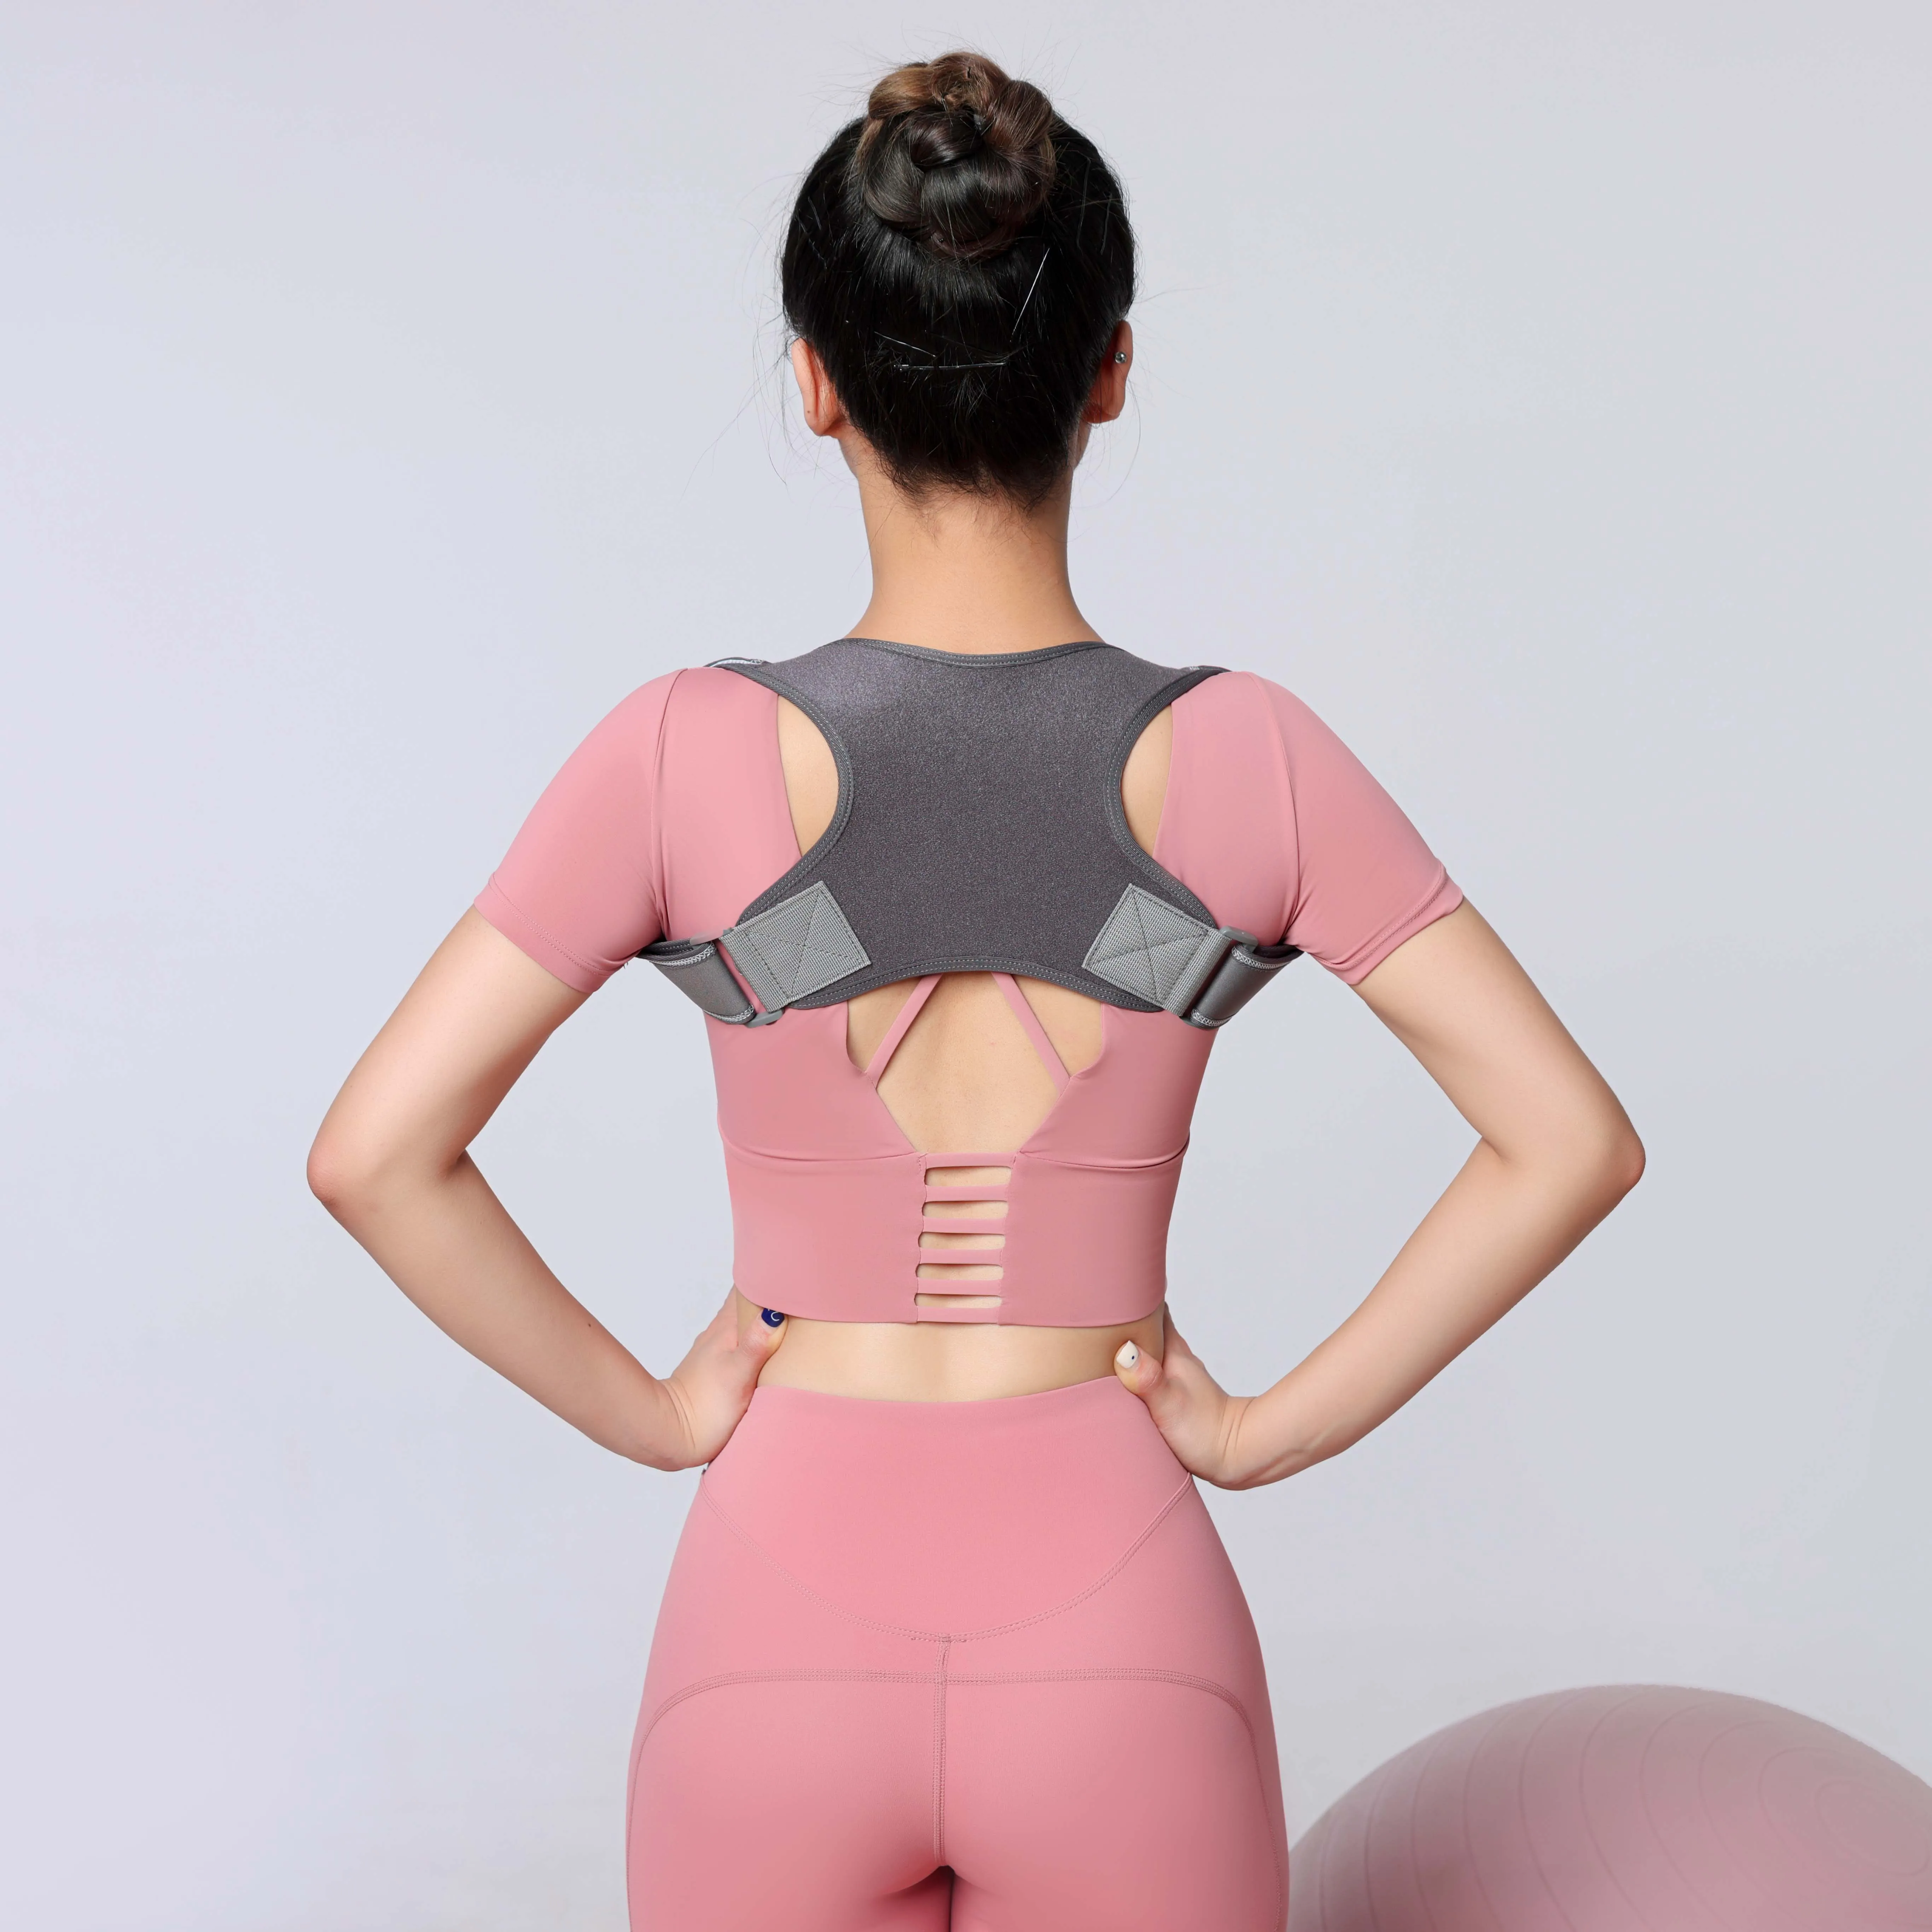 

2021 New products Adjustable shoulder posture corrector back brace in back support posture corrector sale back brace for lower, Black